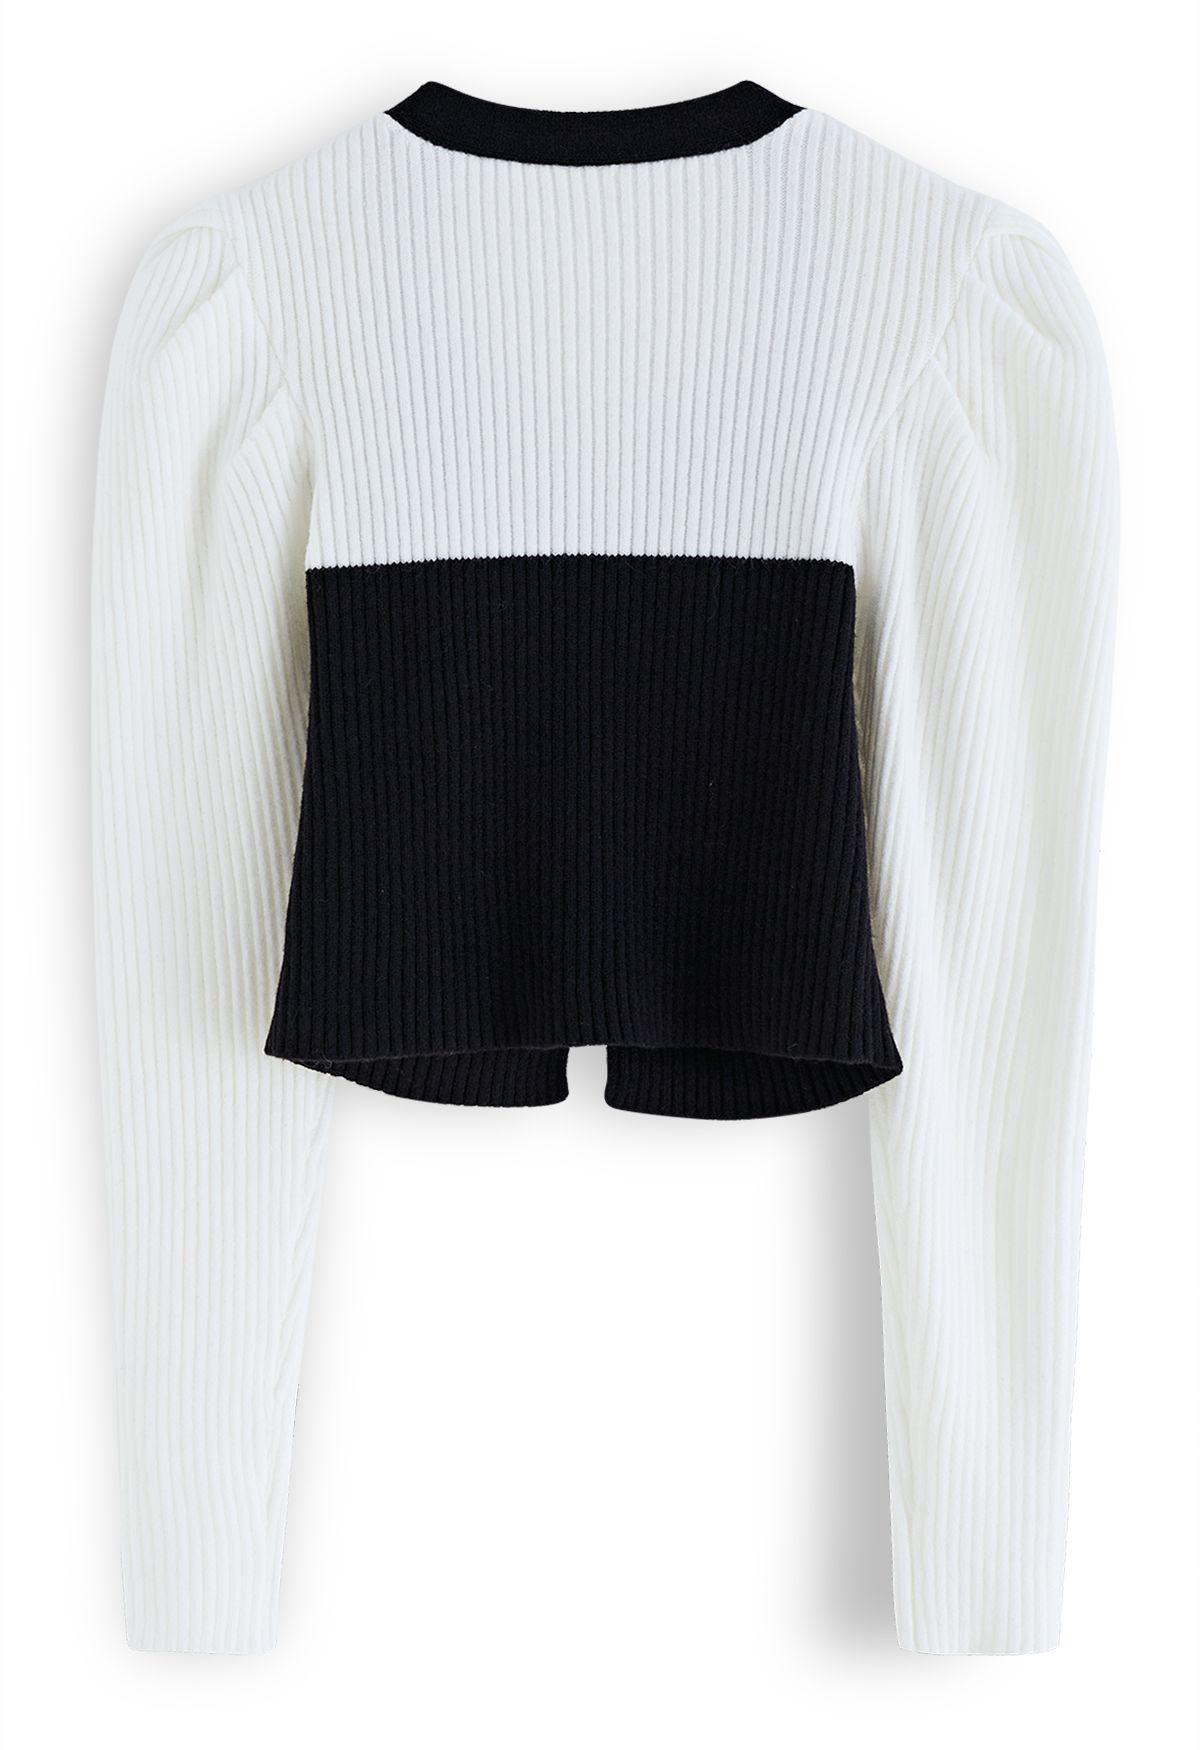 Suéter de punto con mangas abullonadas y botones en contraste en negro